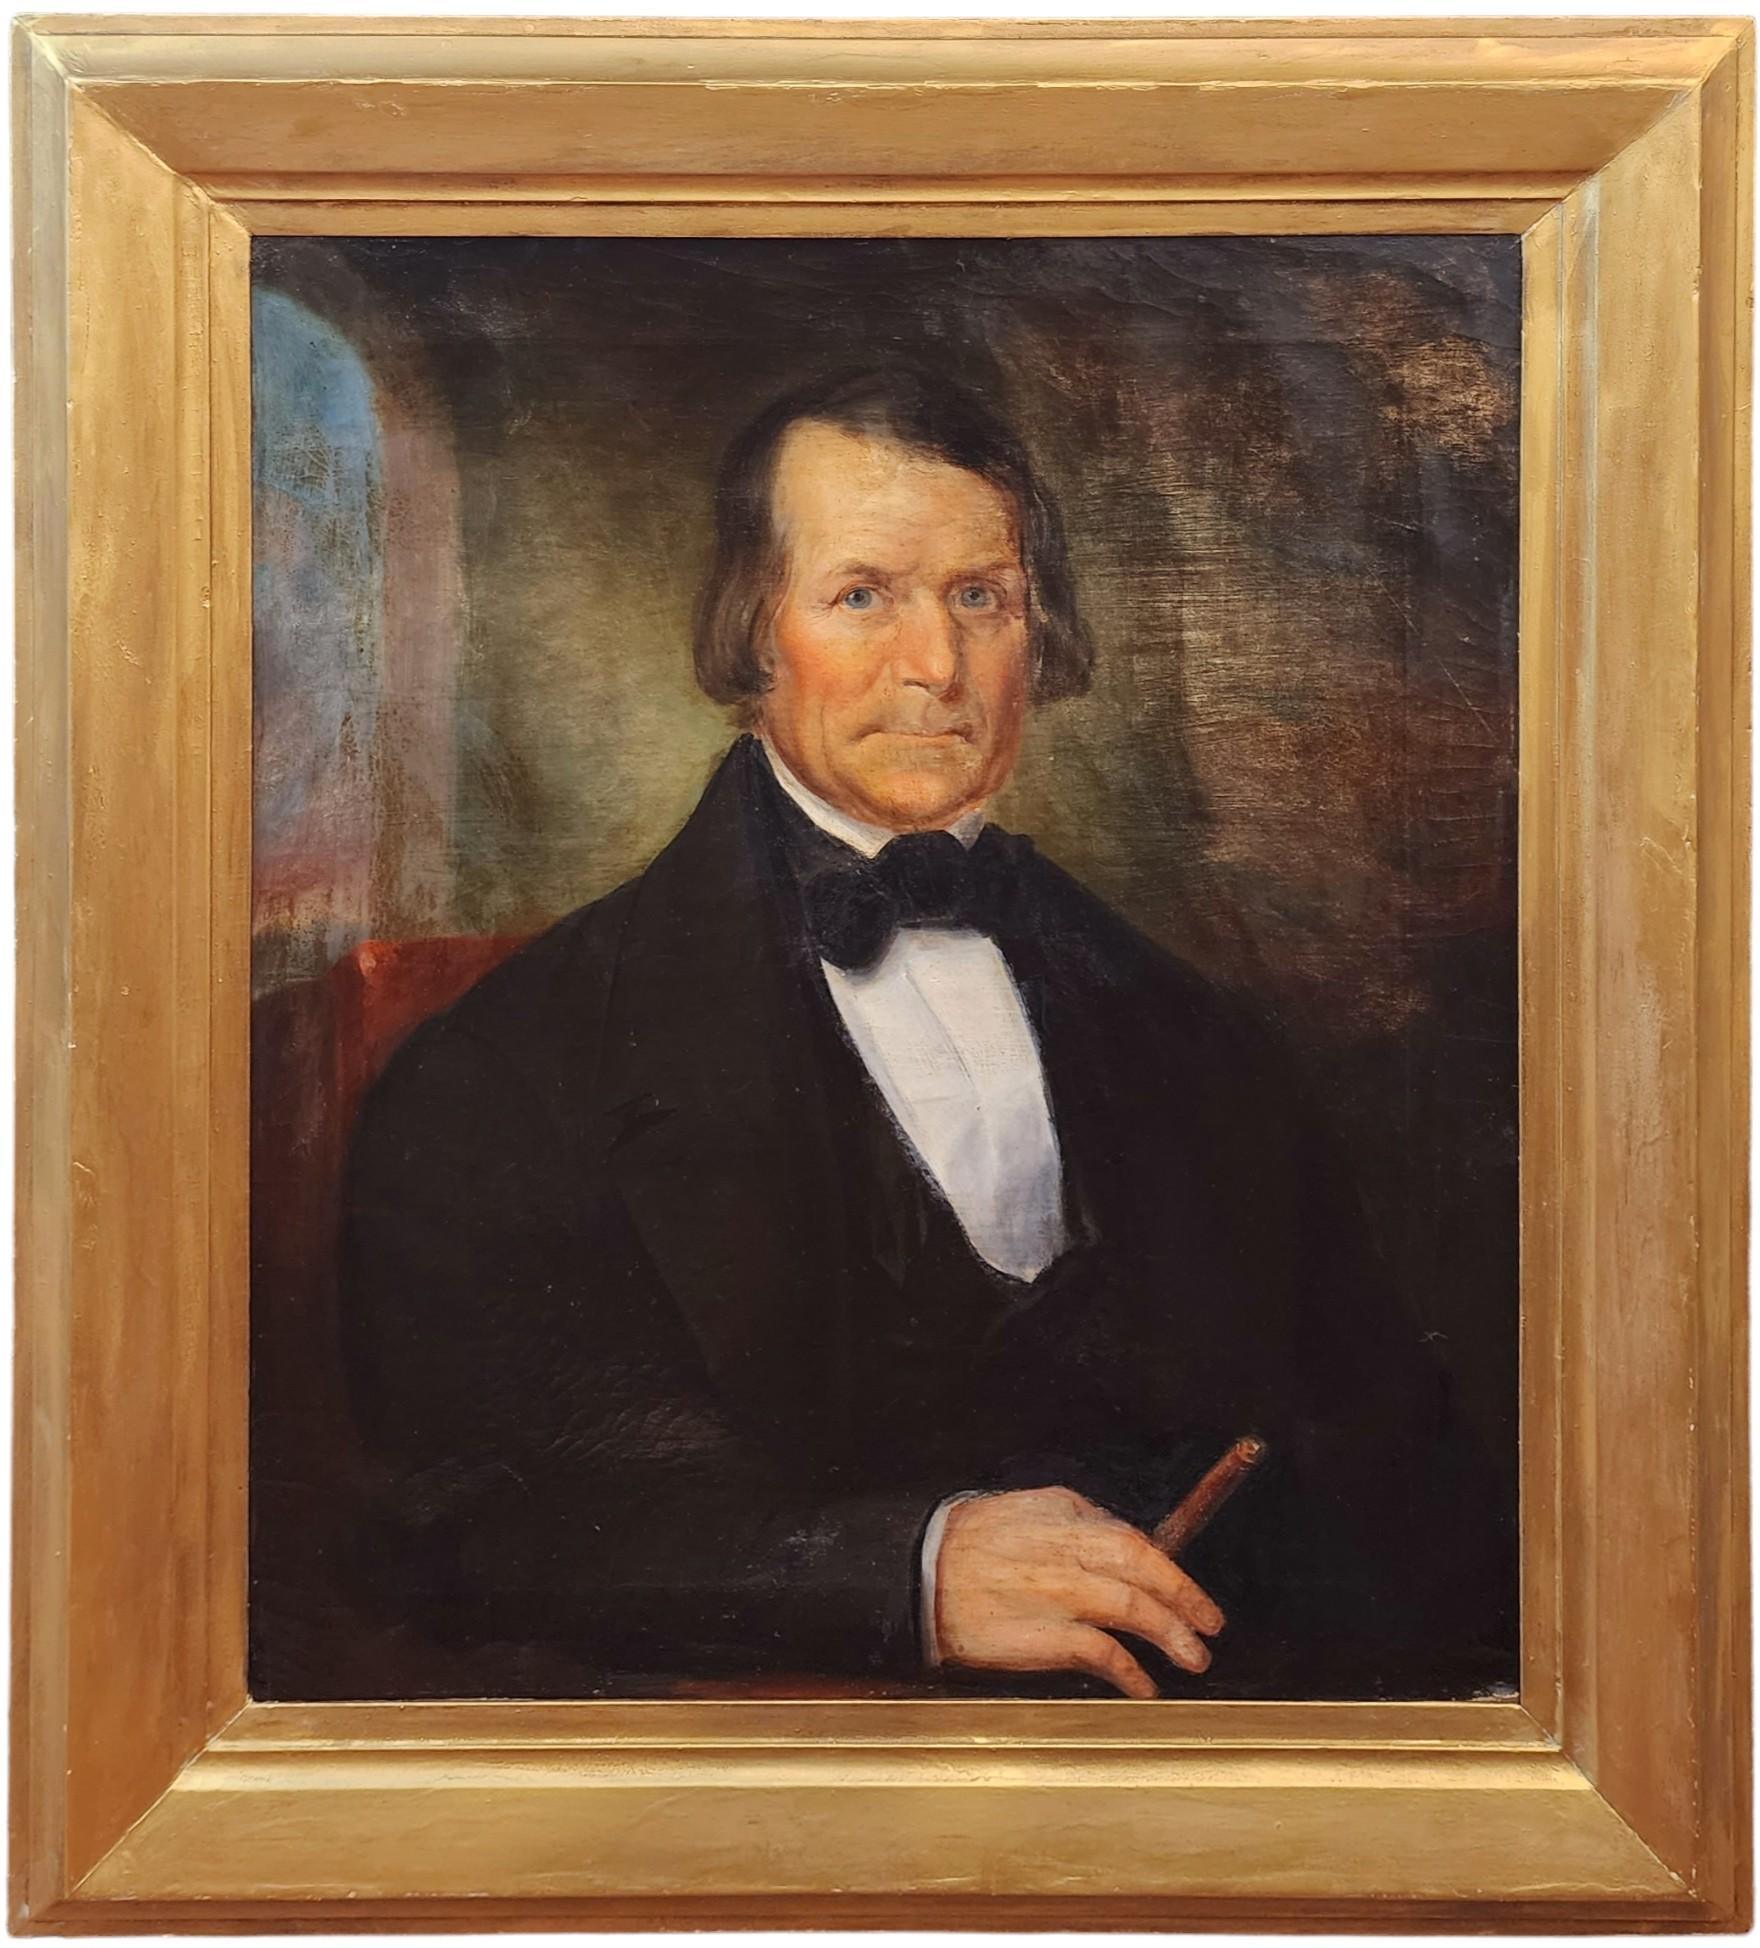 Unknown Portrait Painting – Porträt eines Mannes mit Zigarren, Bowtie, frühes amerikanisches Porträt, Rauchmann